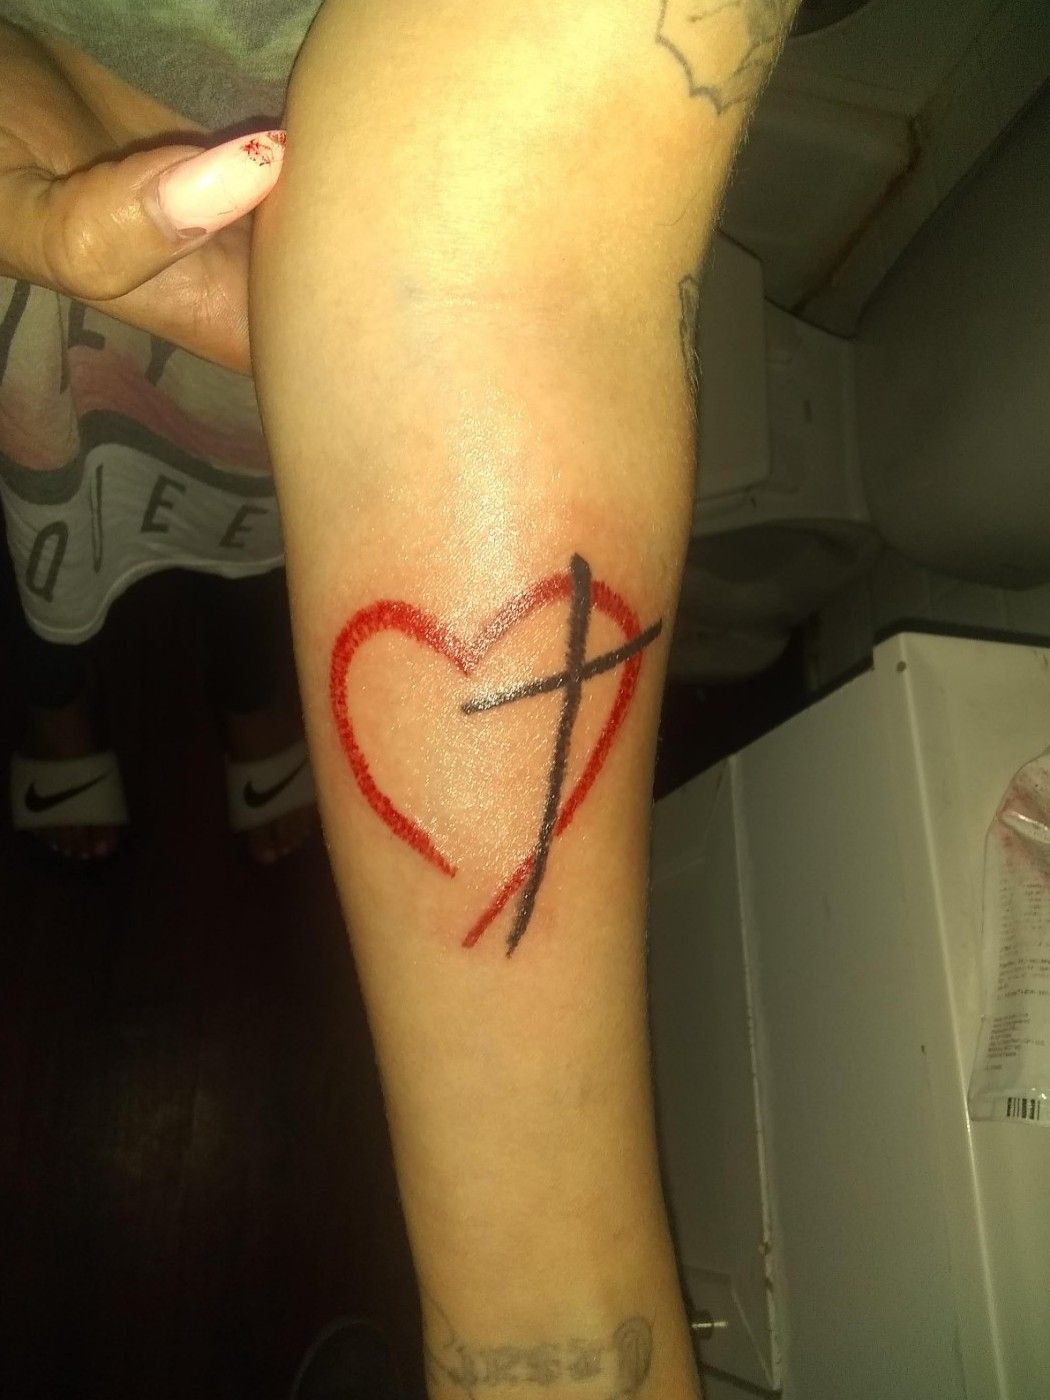 Tattoo uploaded by Sammy Sosa • Louie Vuitton symbol • Tattoodo